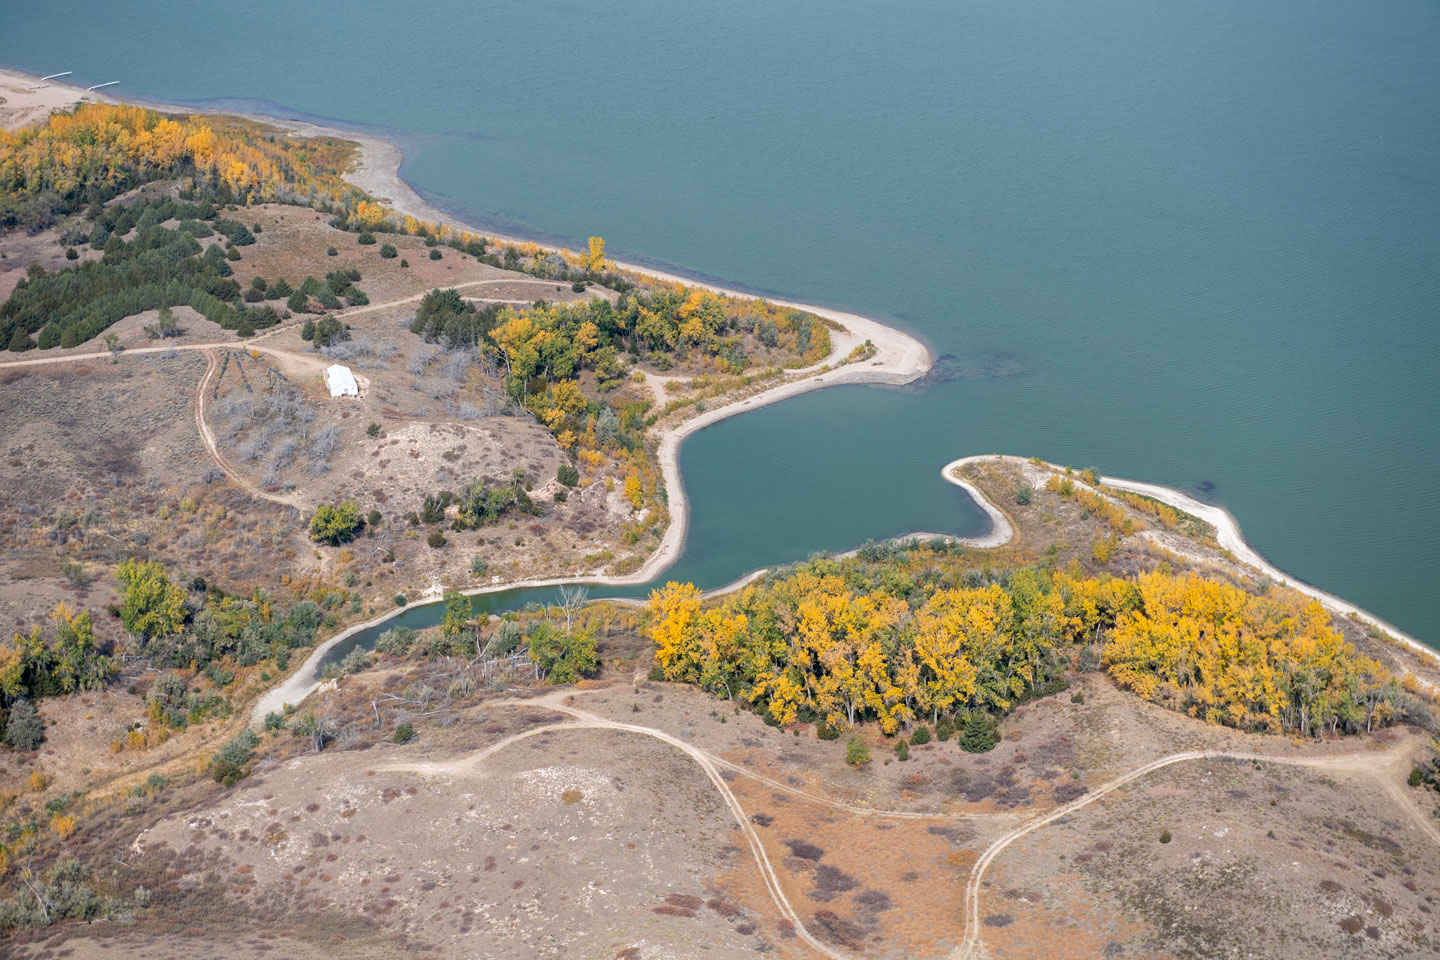 Read More: Enders Reservoir